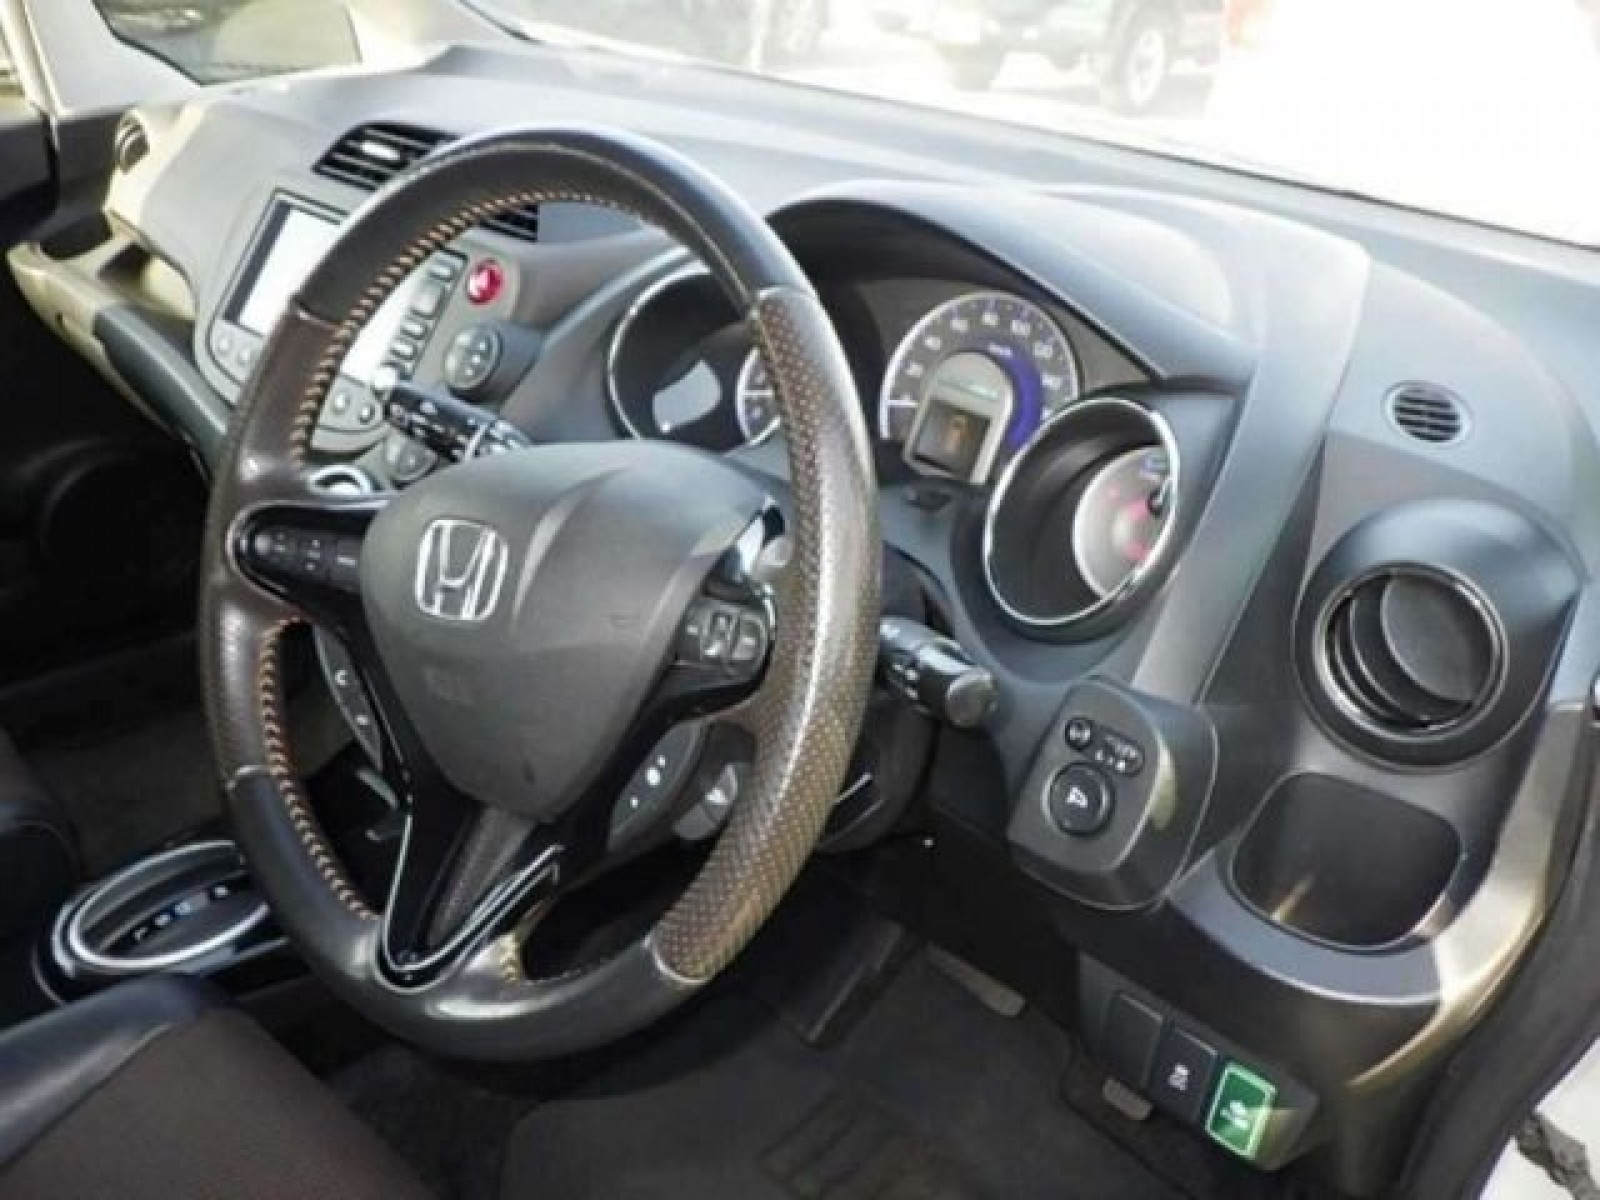 Honda Fit Shuttle Hybrid 2011